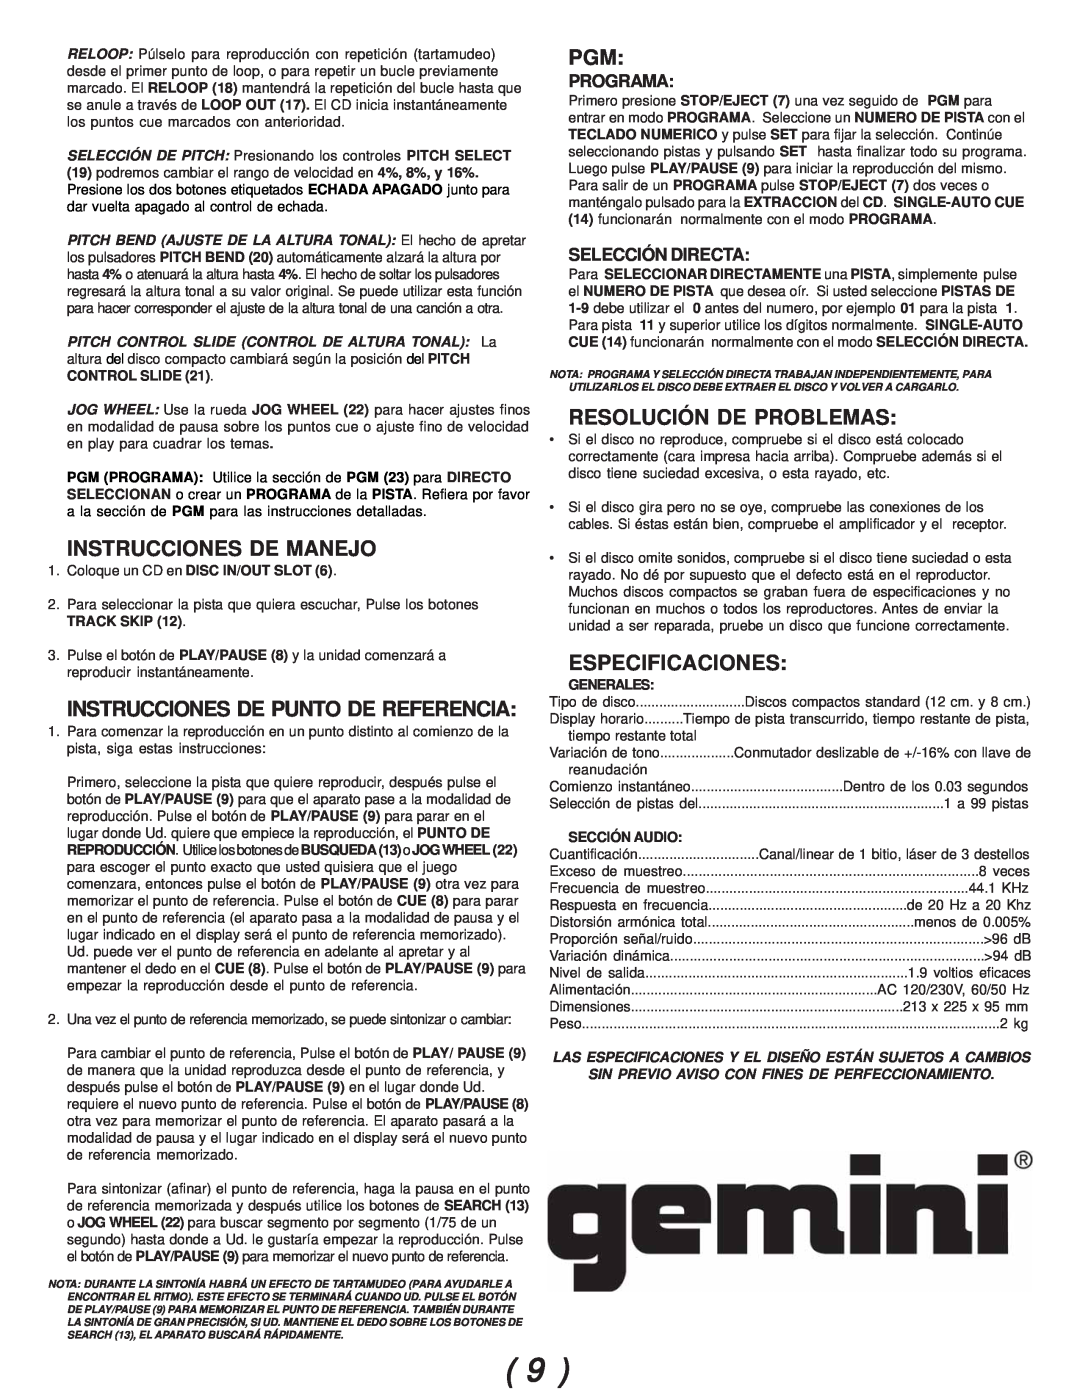 Gemini CDJ-02 Instrucciones De Manejo, Resolución De Problemas, Especificaciones, Instrucciones De Punto De Referencia 